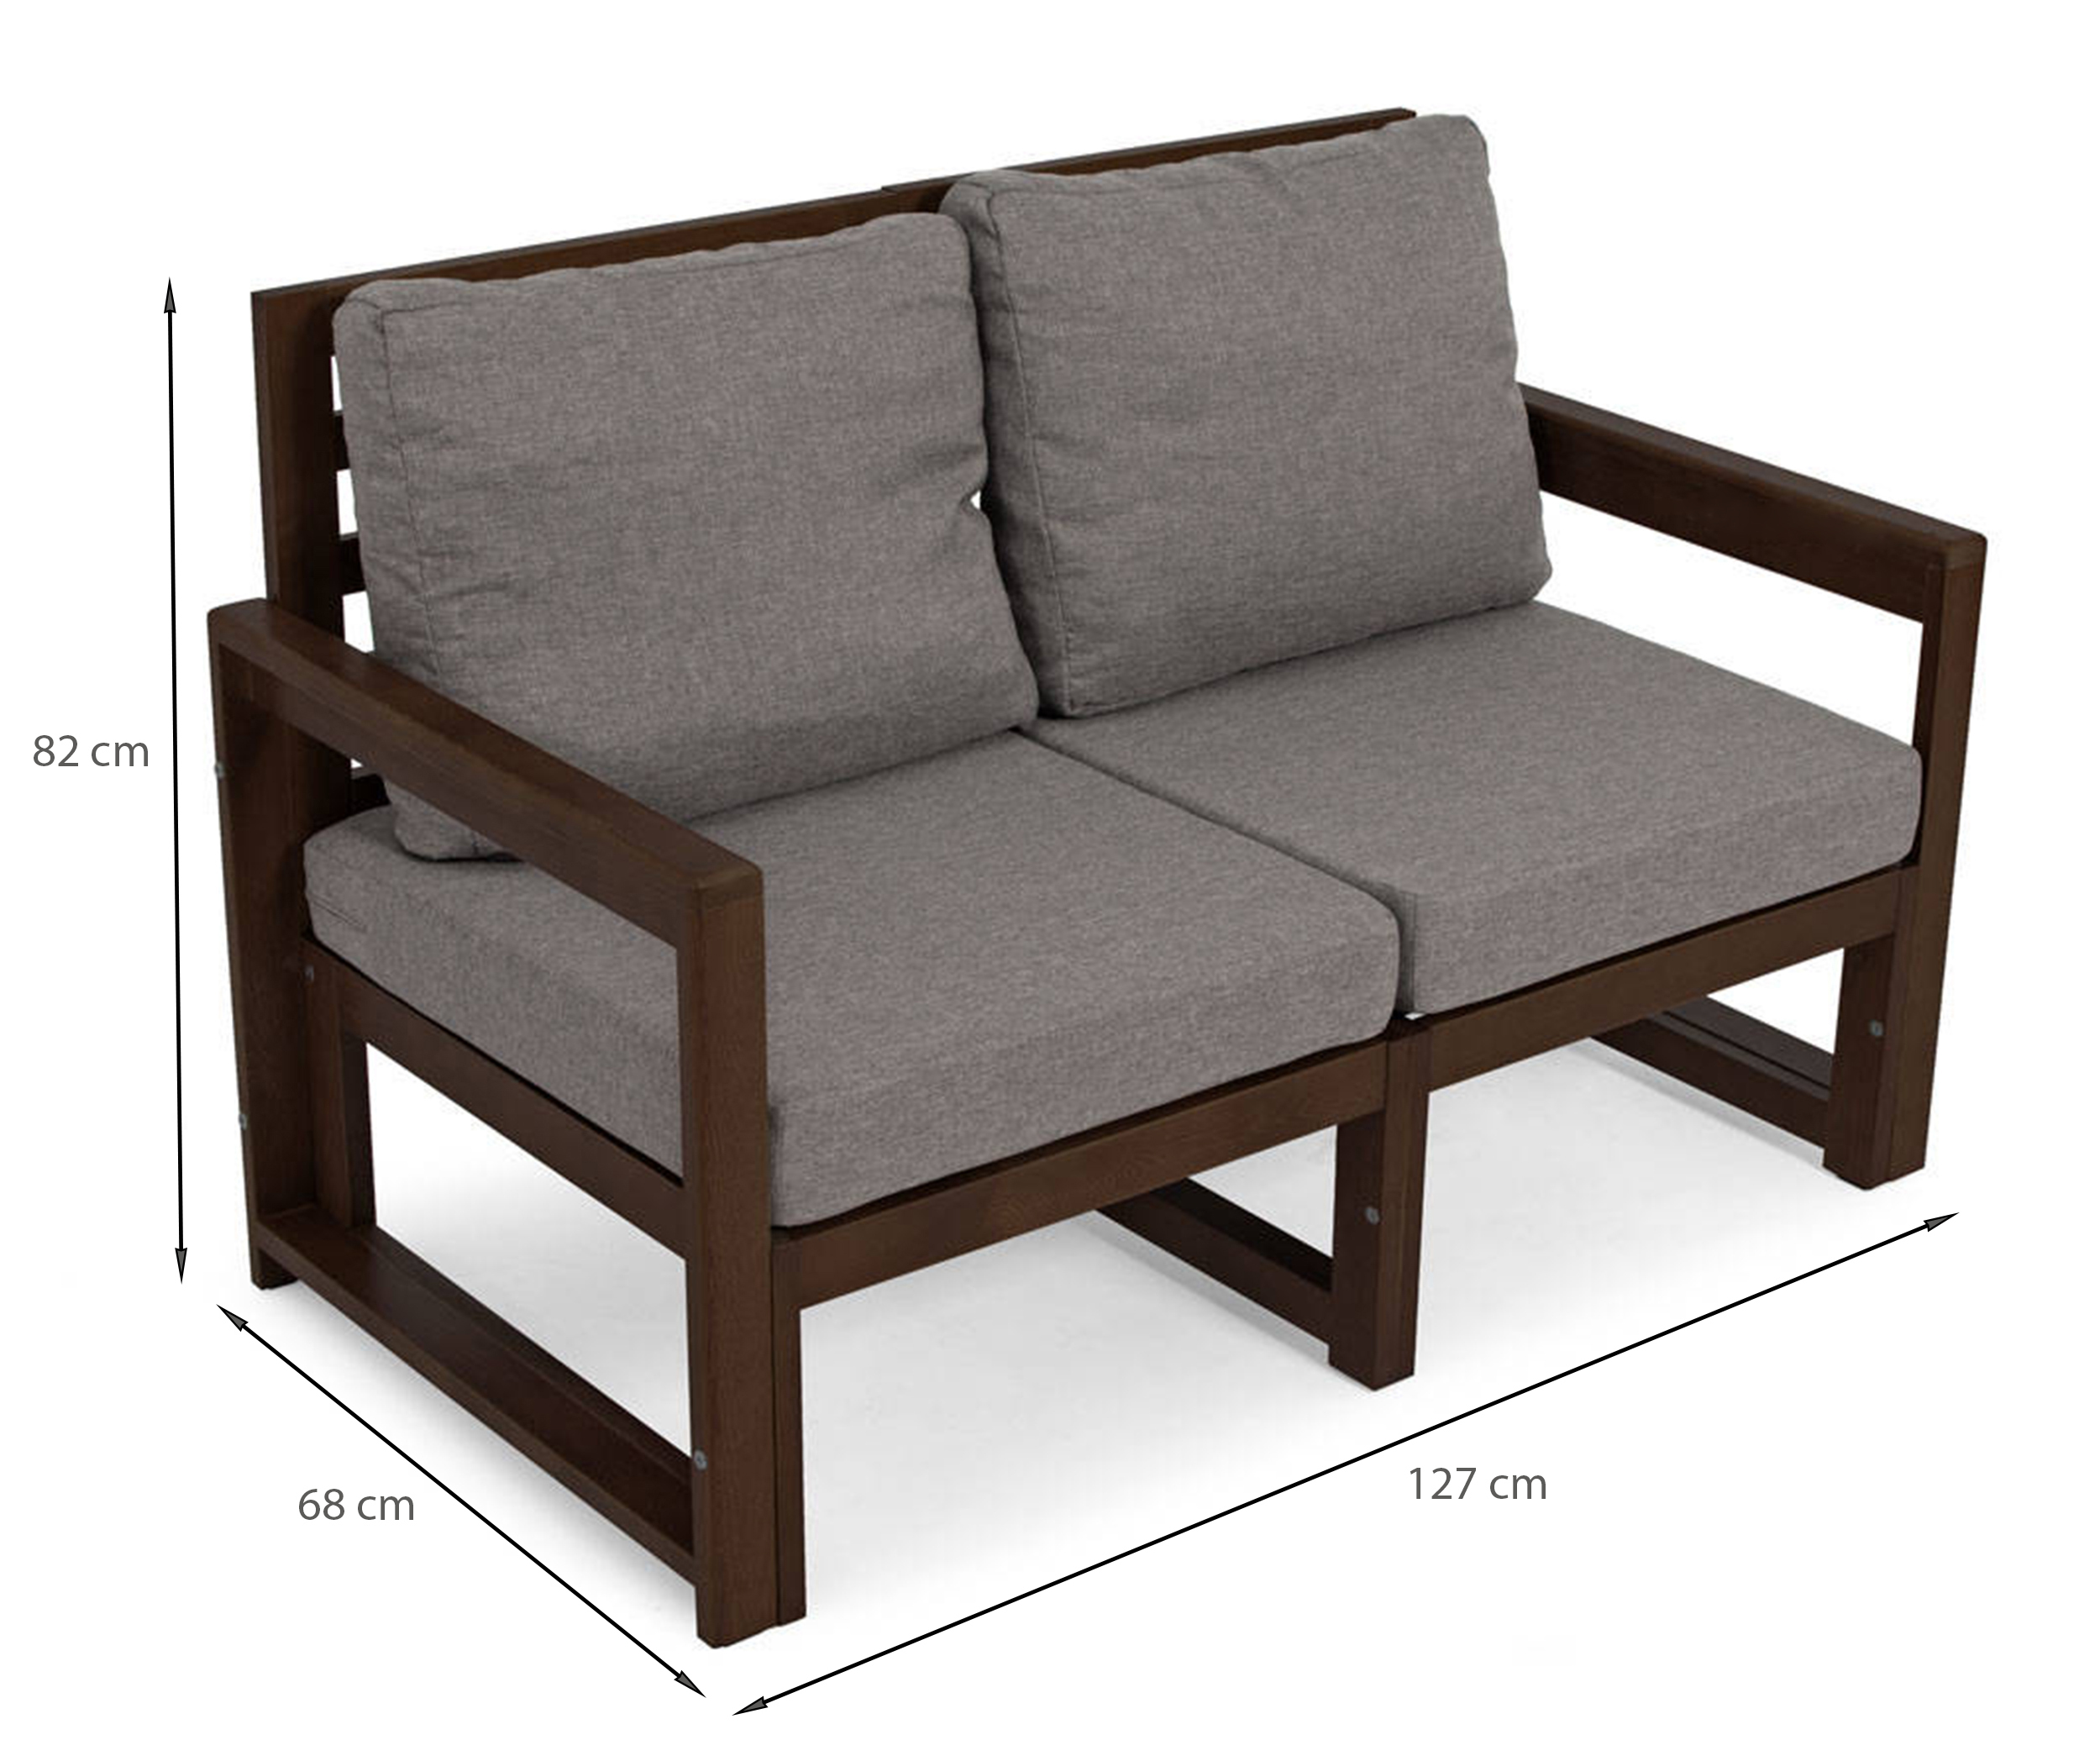 Zestaw mebli ogrodowych Ritalous z sofą, dwoma fotelami i stolikiem kawowym drewniany ciemnobrązowy/grafitowy